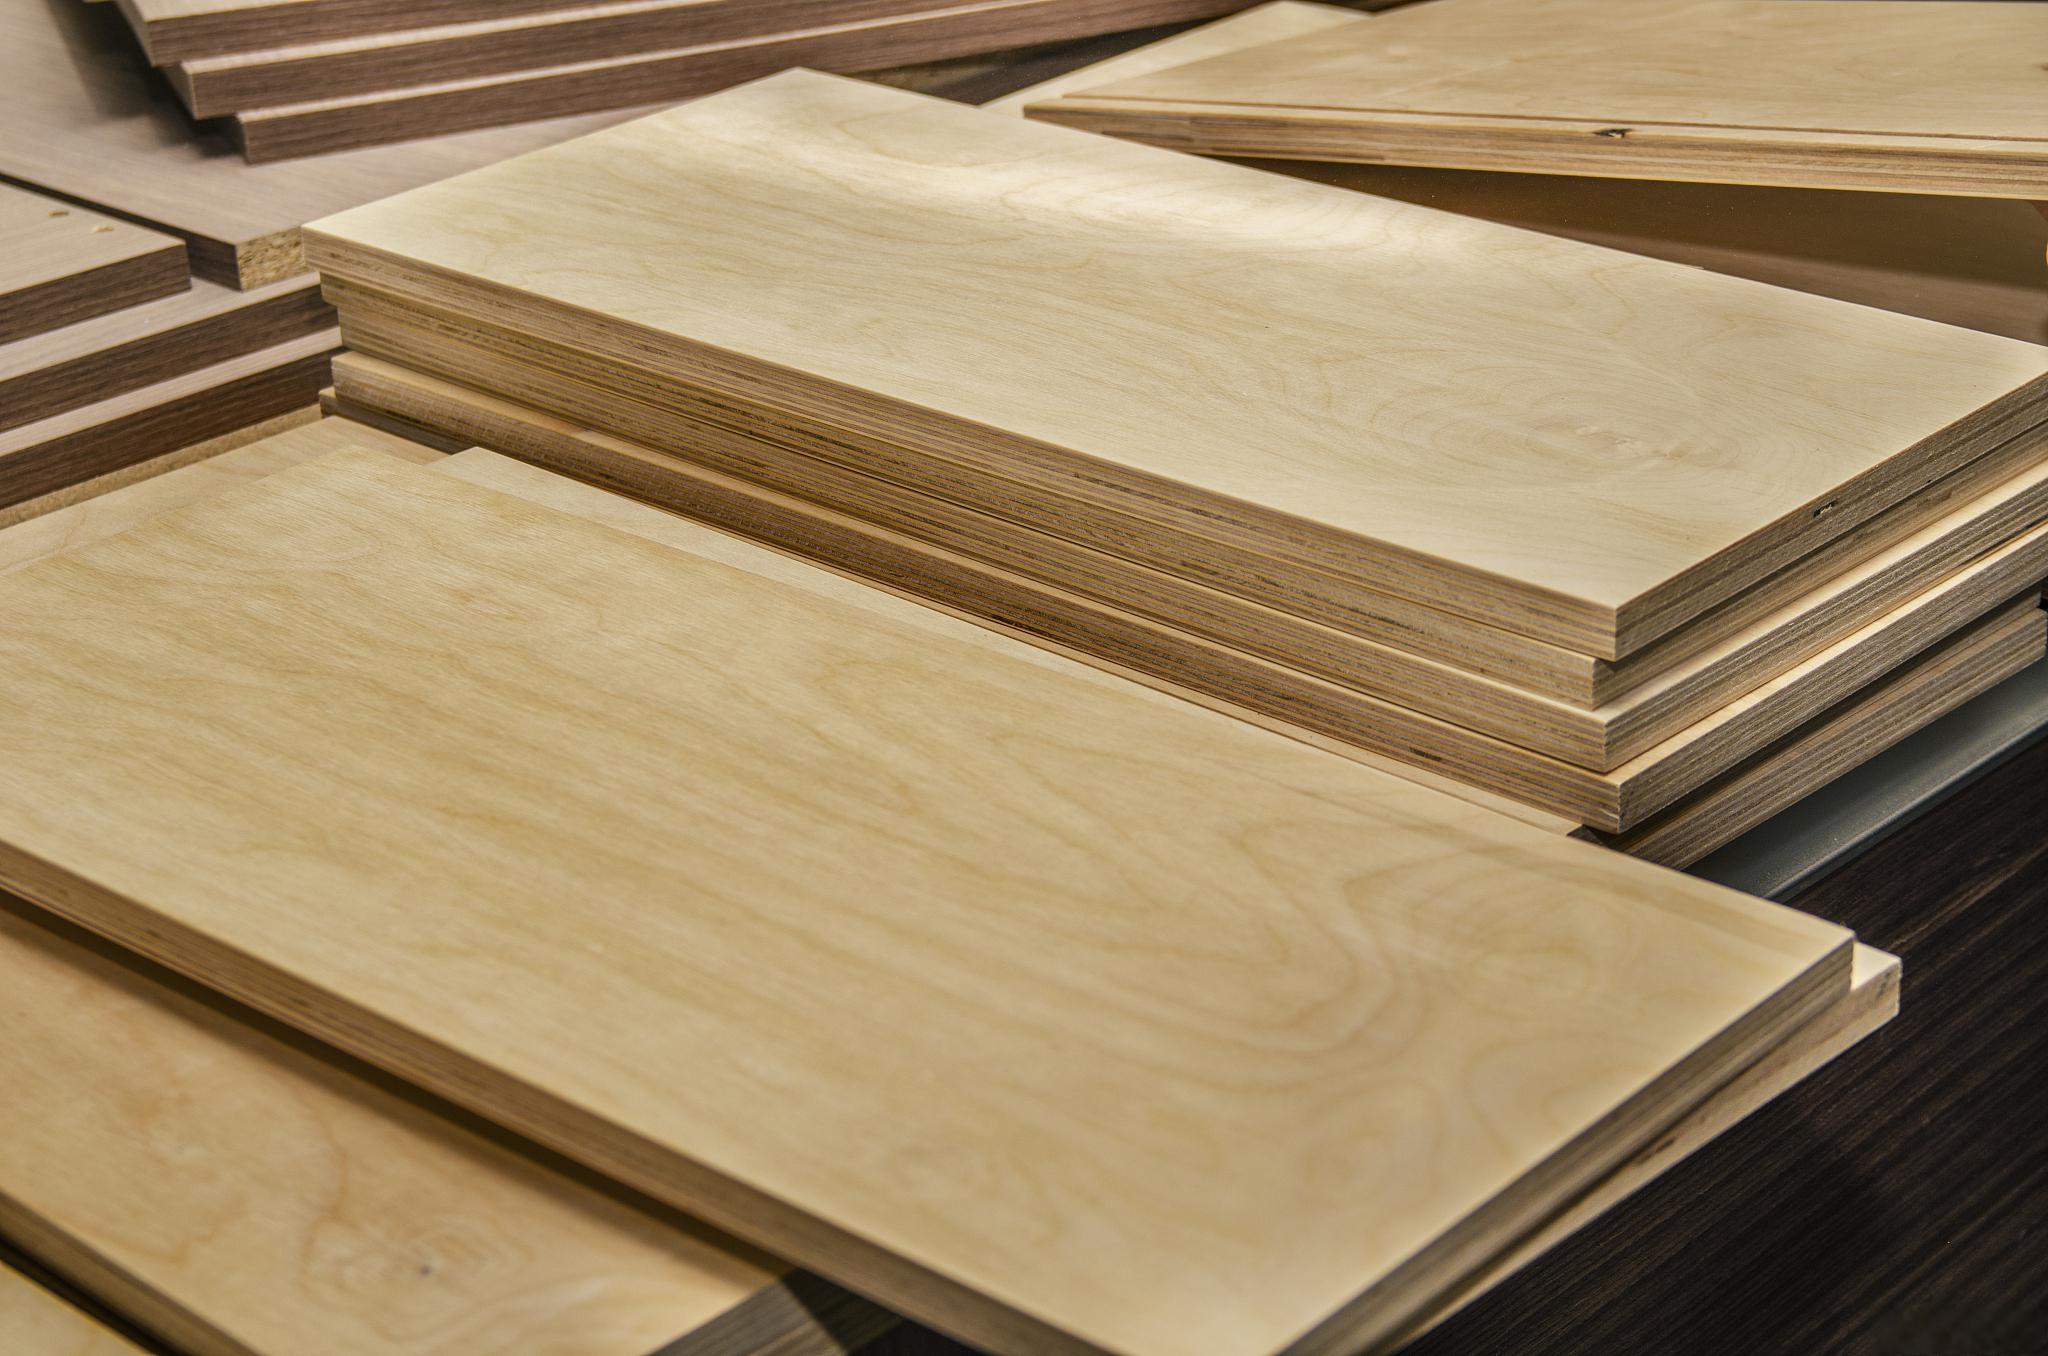 木工板:多功能,环保的优质建材 作为家居装饰和建筑